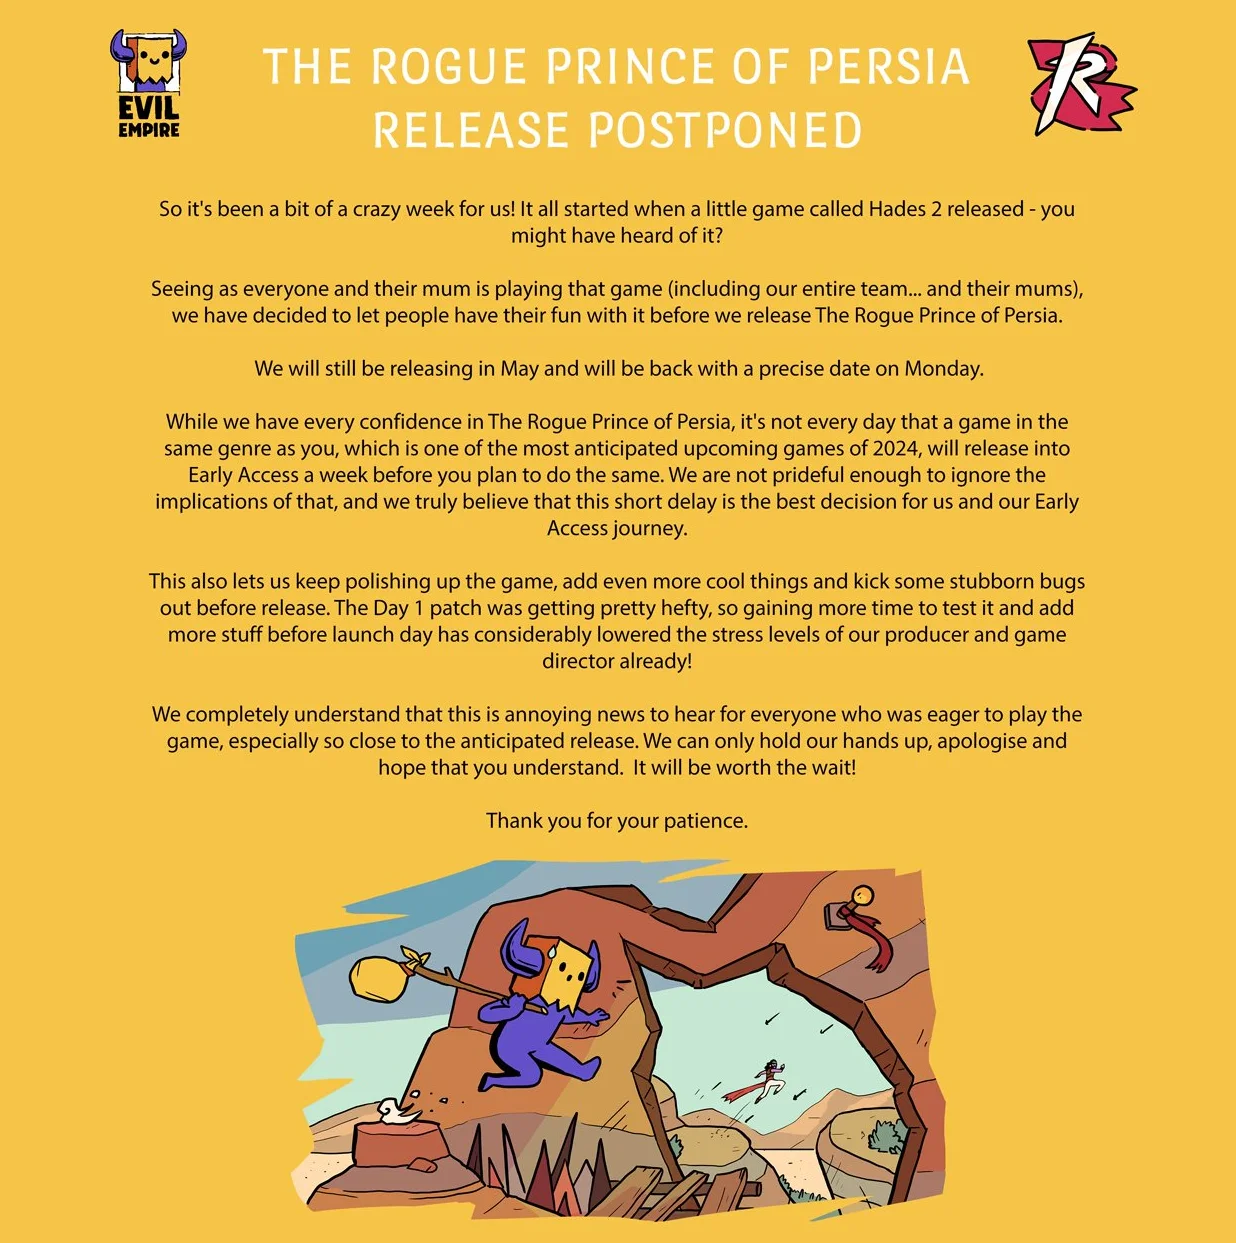 Релиз The Rogue Prince of Persia задержали из-за релиза Hades 2 - фото 1